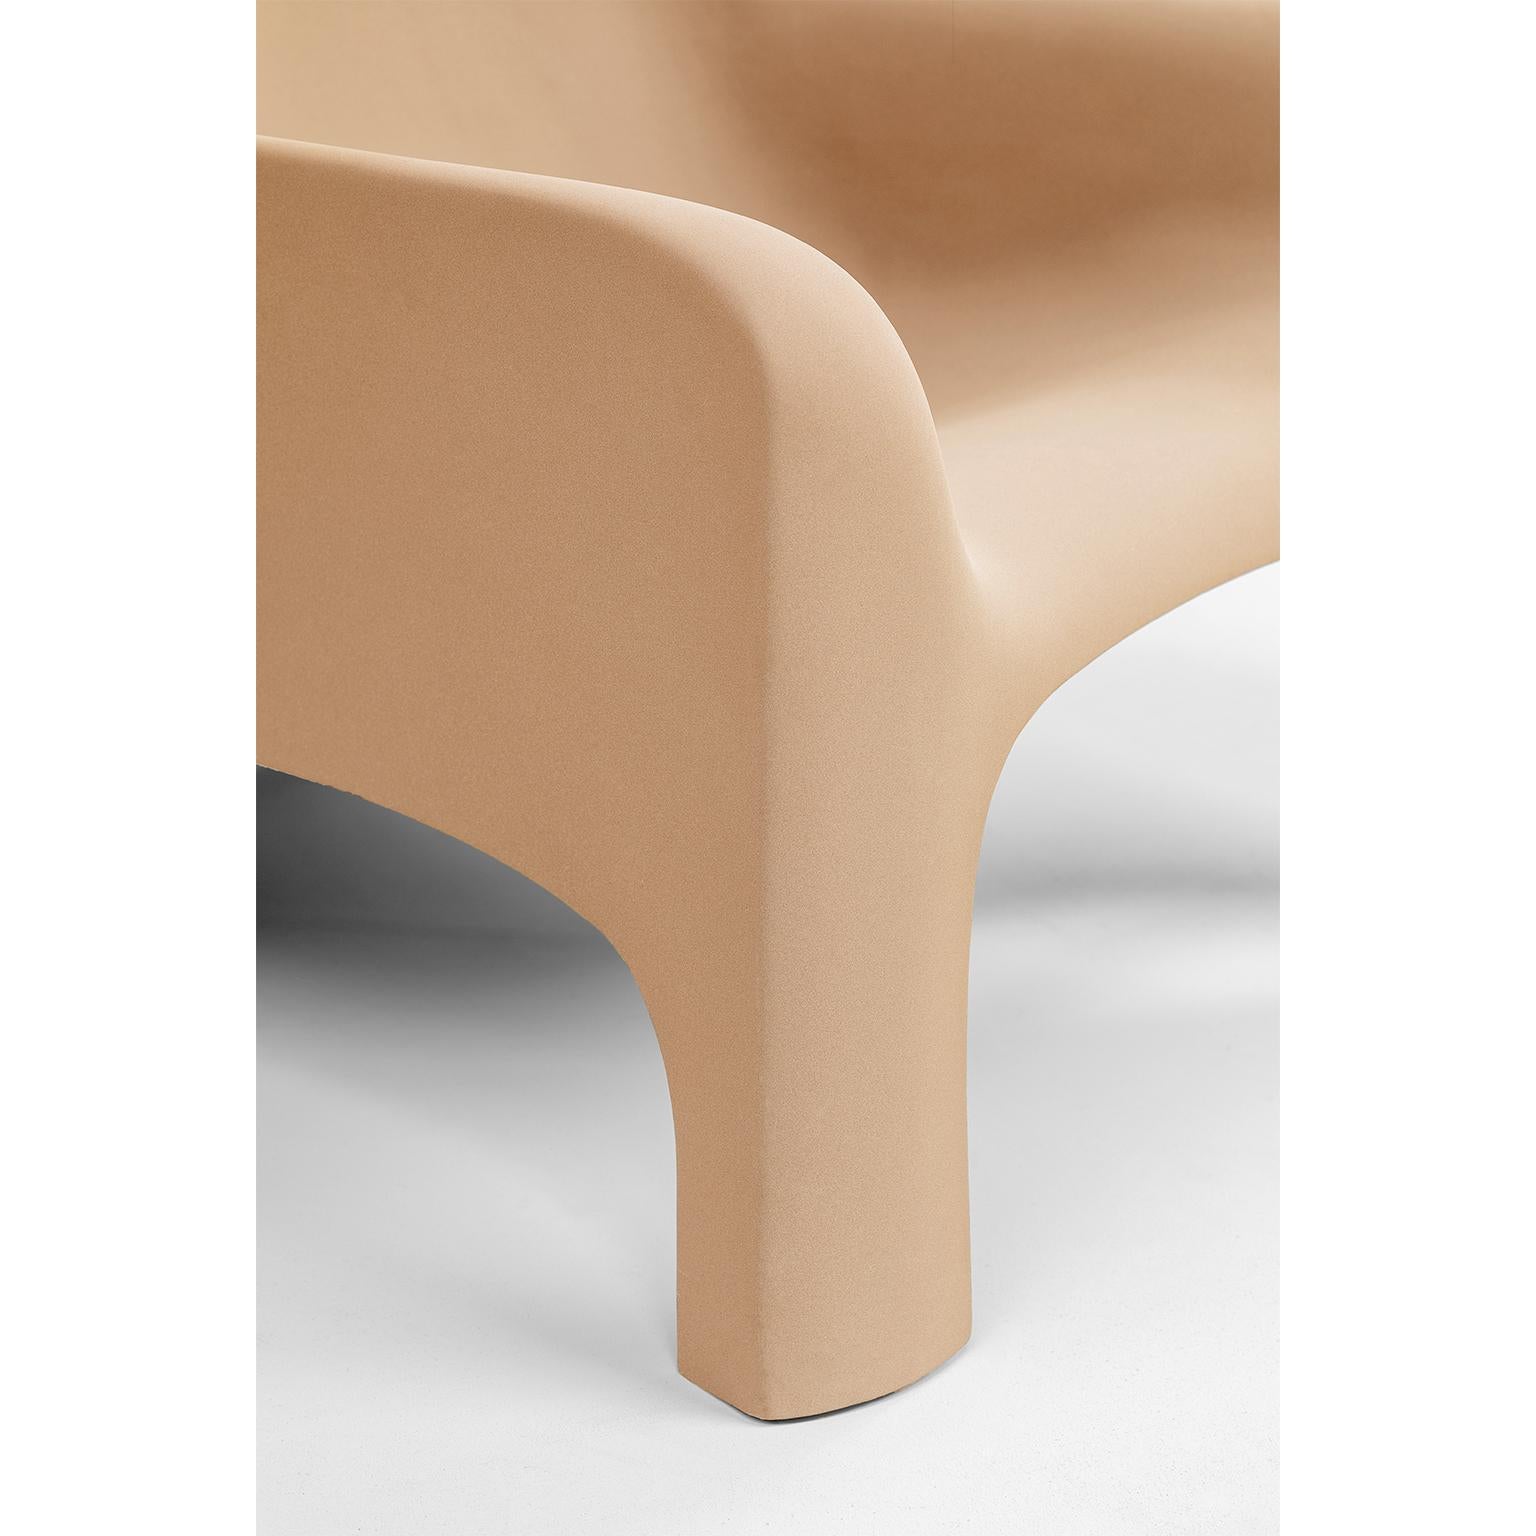 Mid-Century Modern Gaia Armchair by Arflex Designer Bartoli Transformed by Draga&Aurel Fiberglass